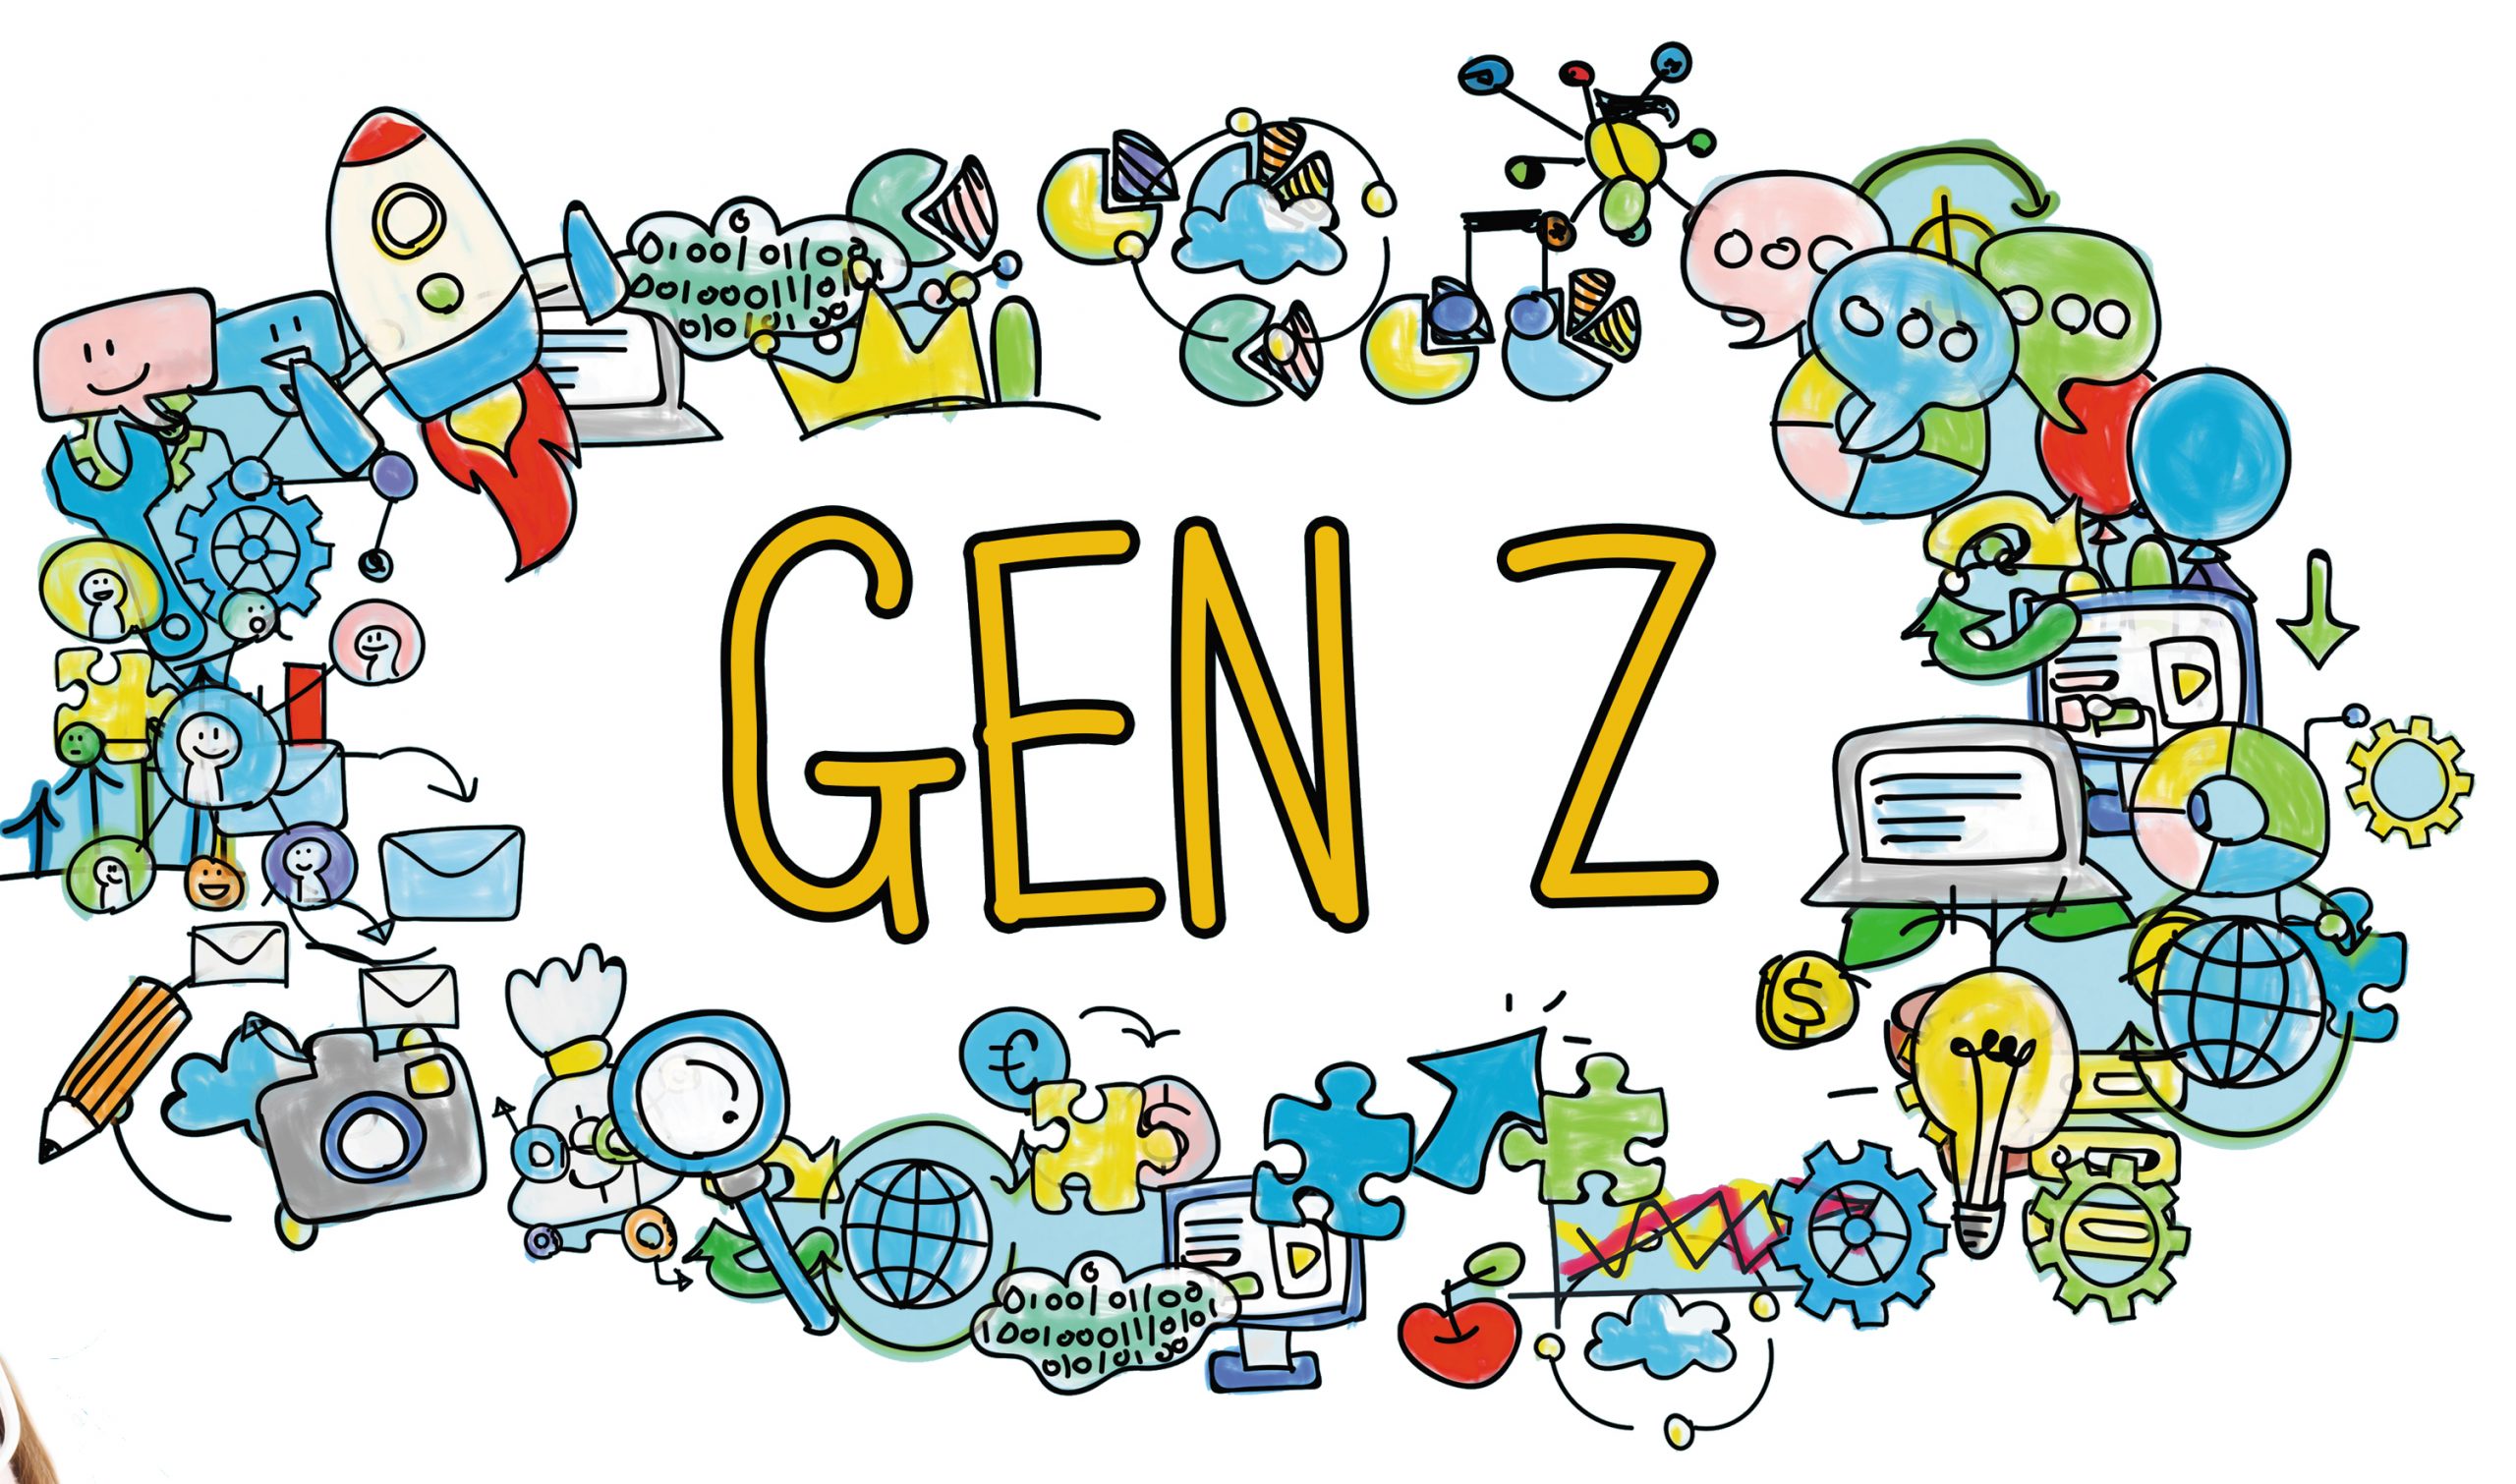 Cách Marketing của Gen Z tạo điểm nhấn